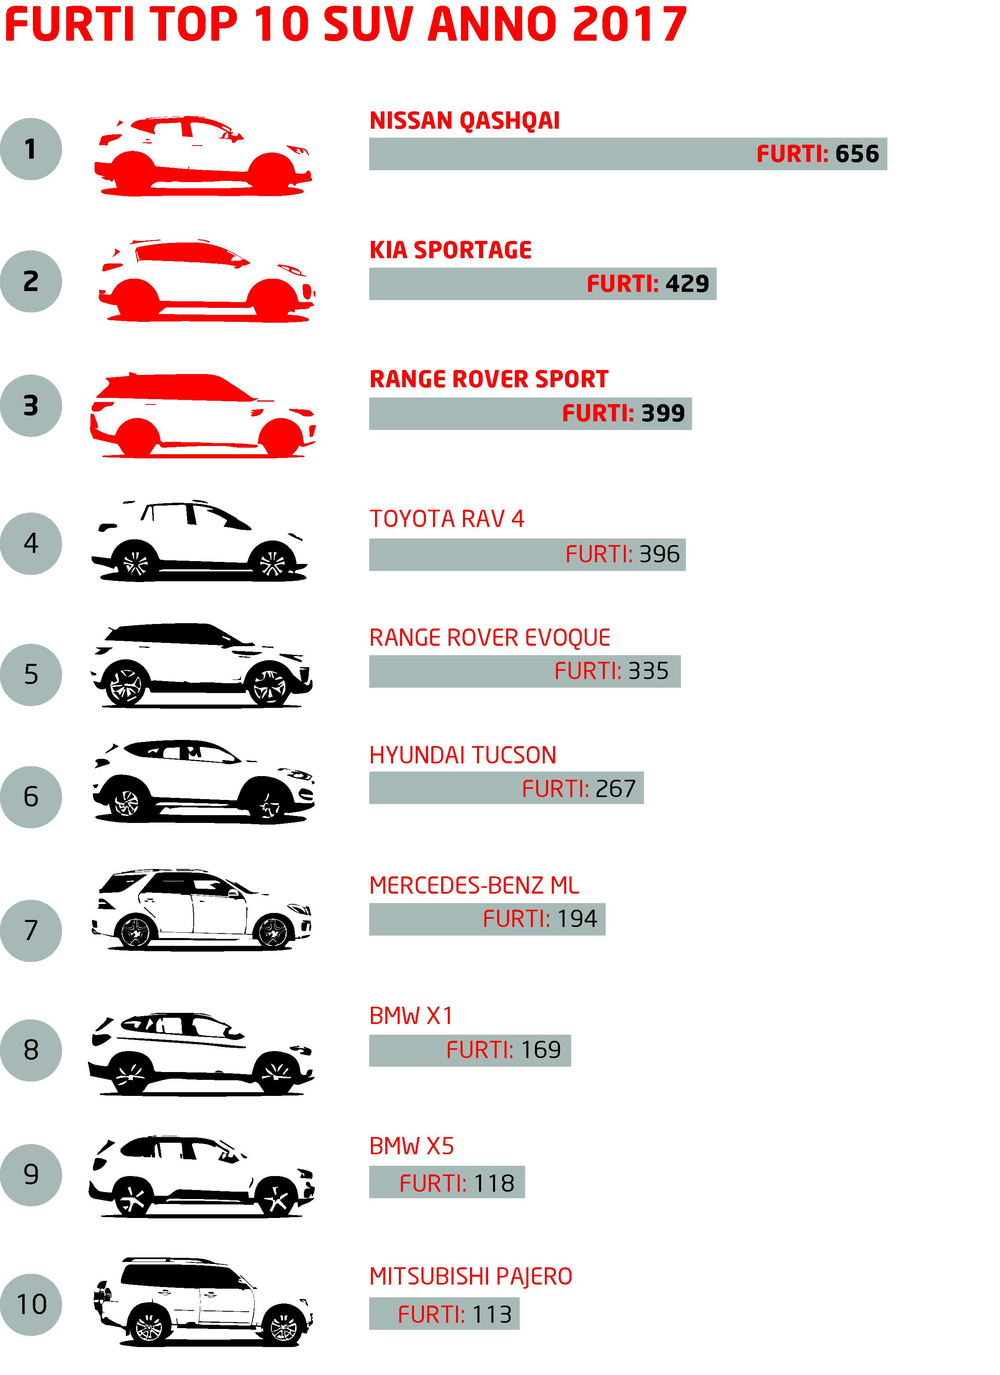 La classifica dei SUV pi&ugrave; ambiti dai ladri